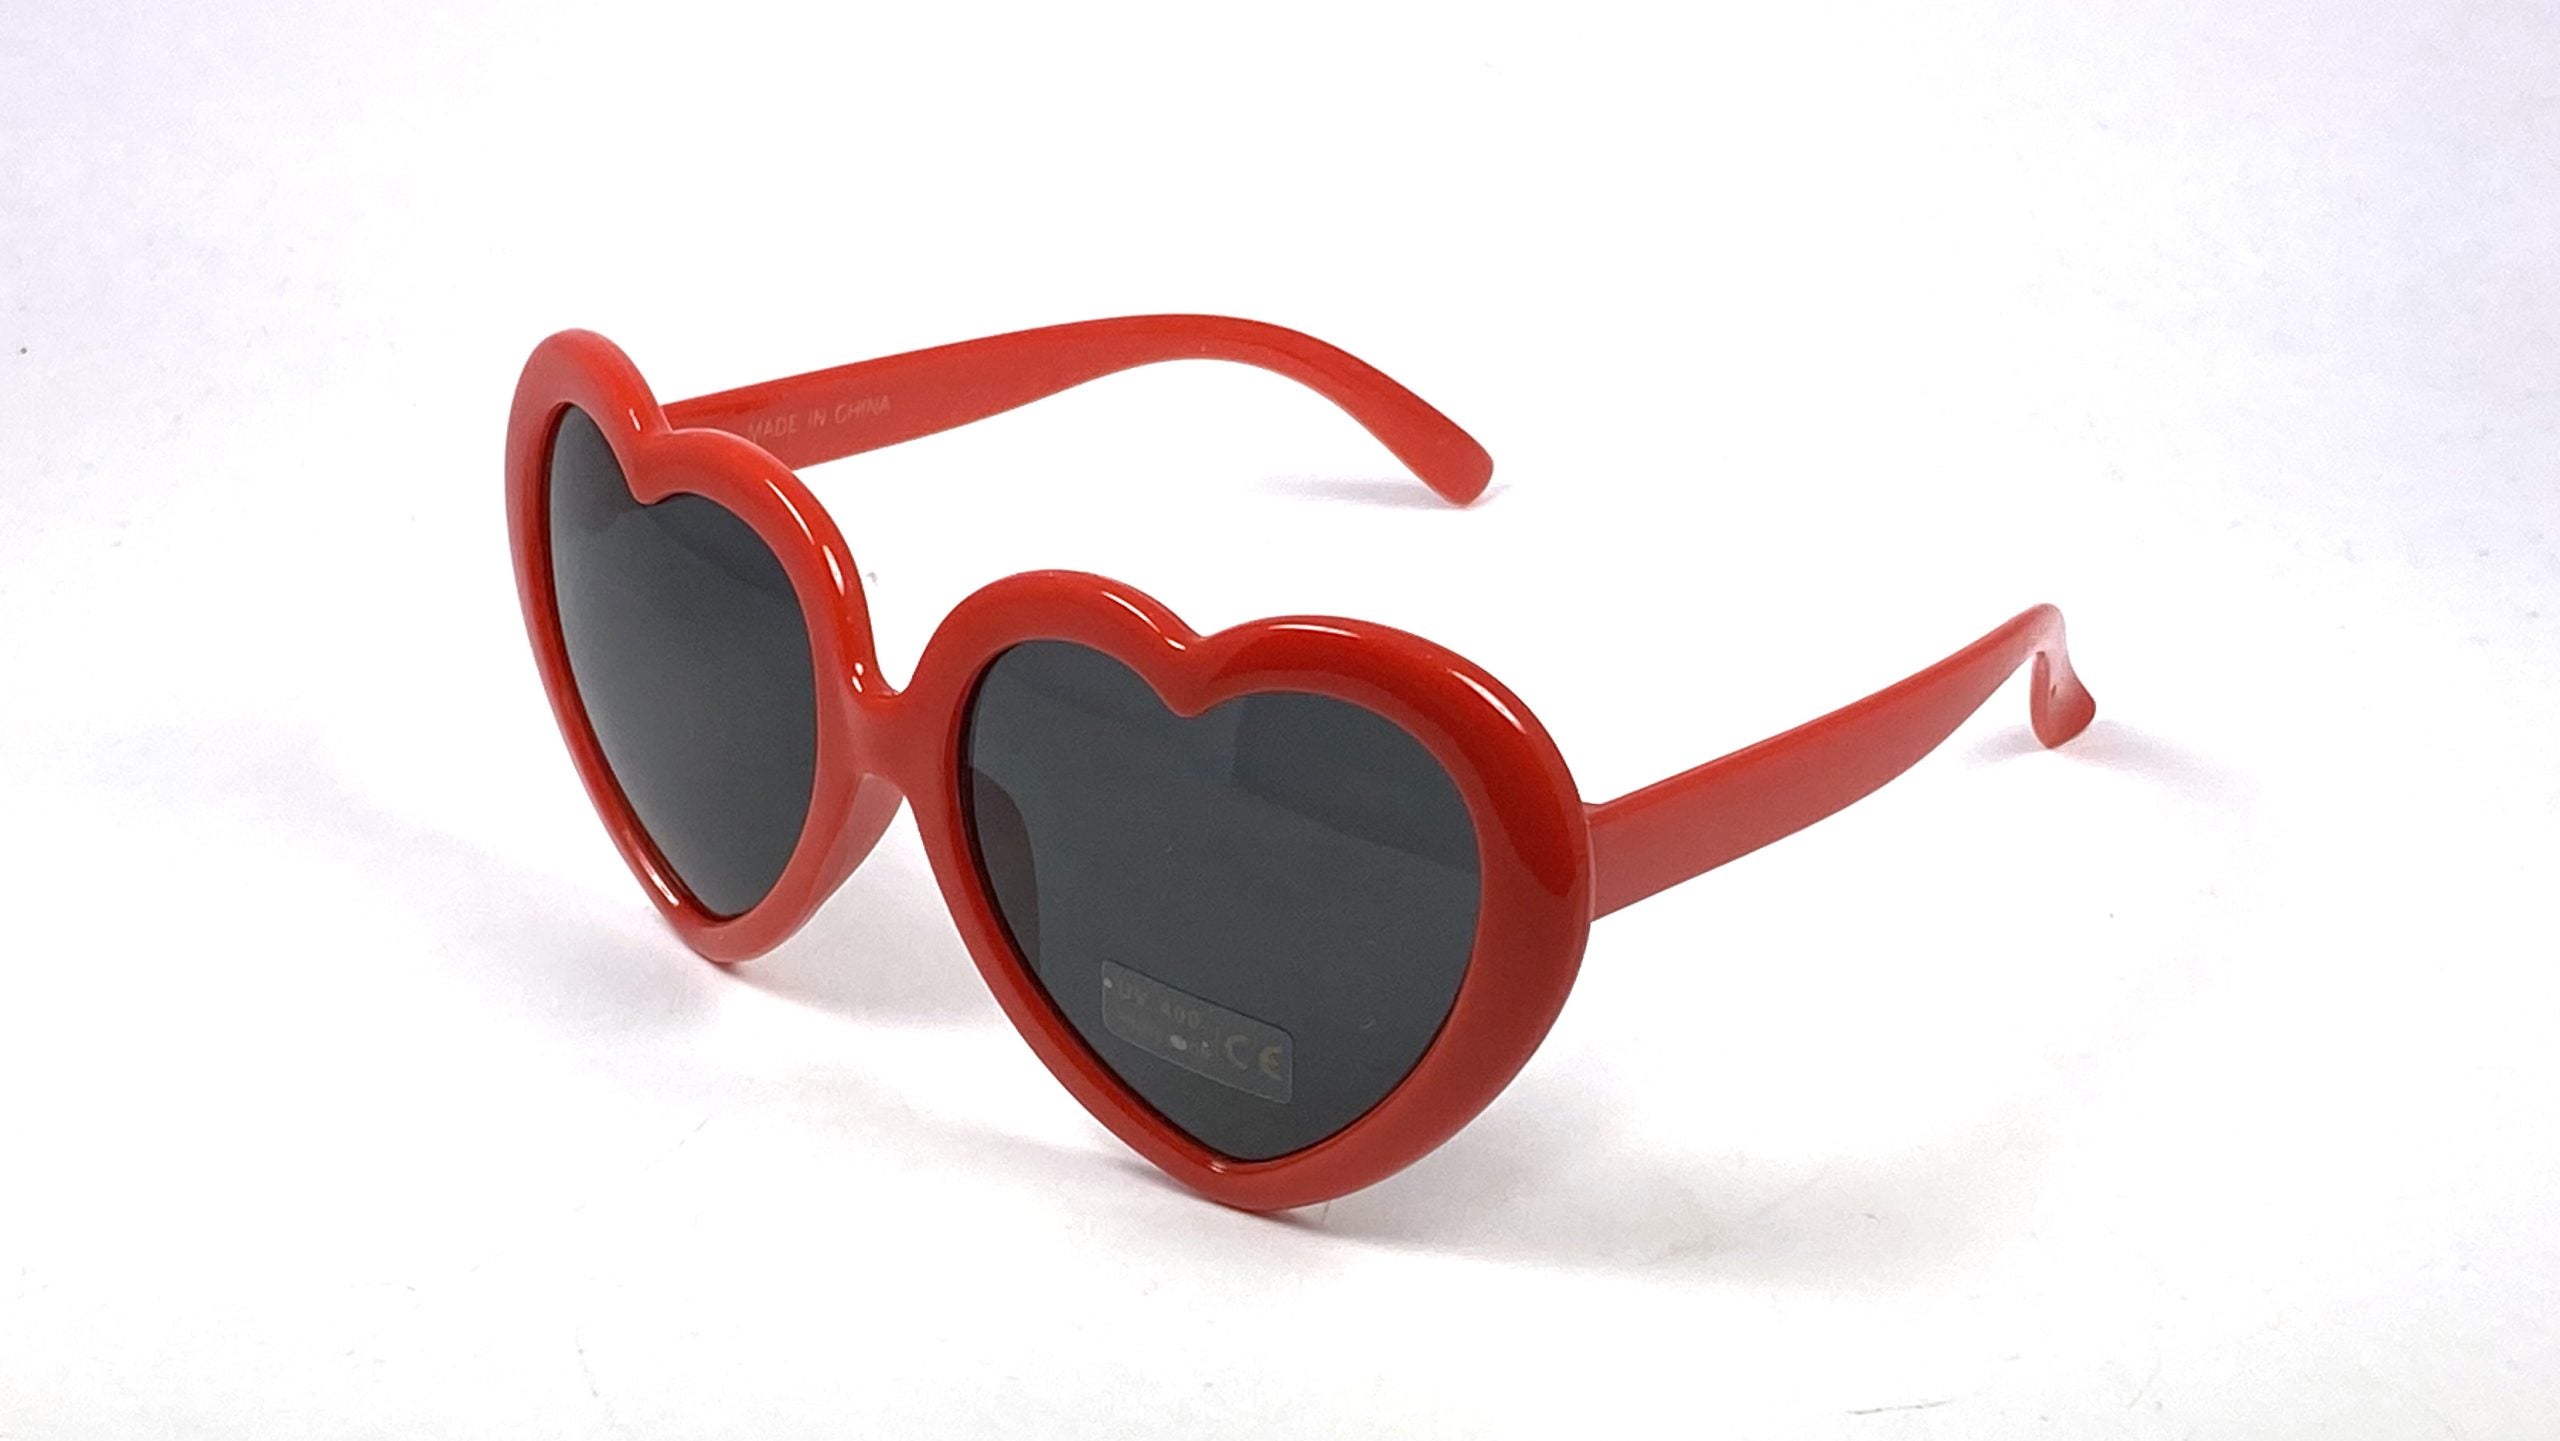 SB-841 Heart Shaped Sunglasses - Adult Size